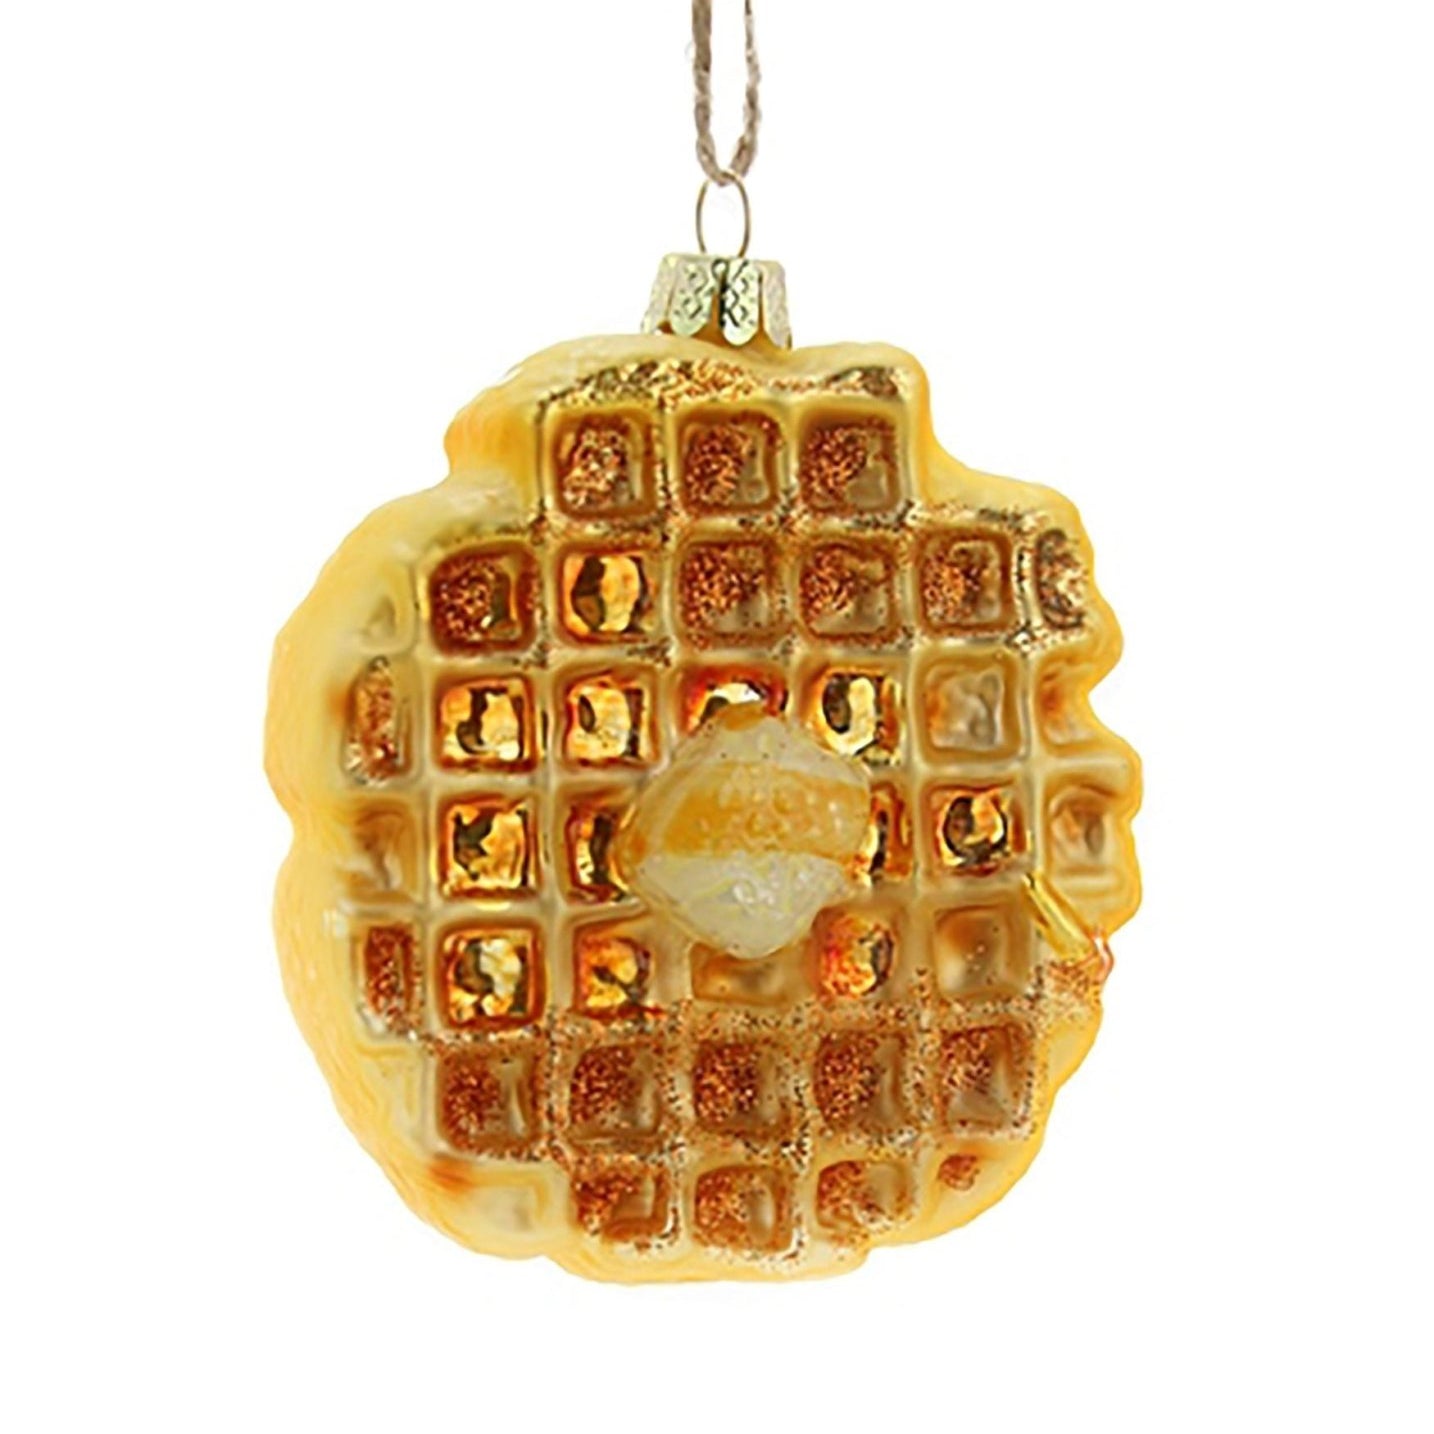 Eggo Waffle Ornament - Joy